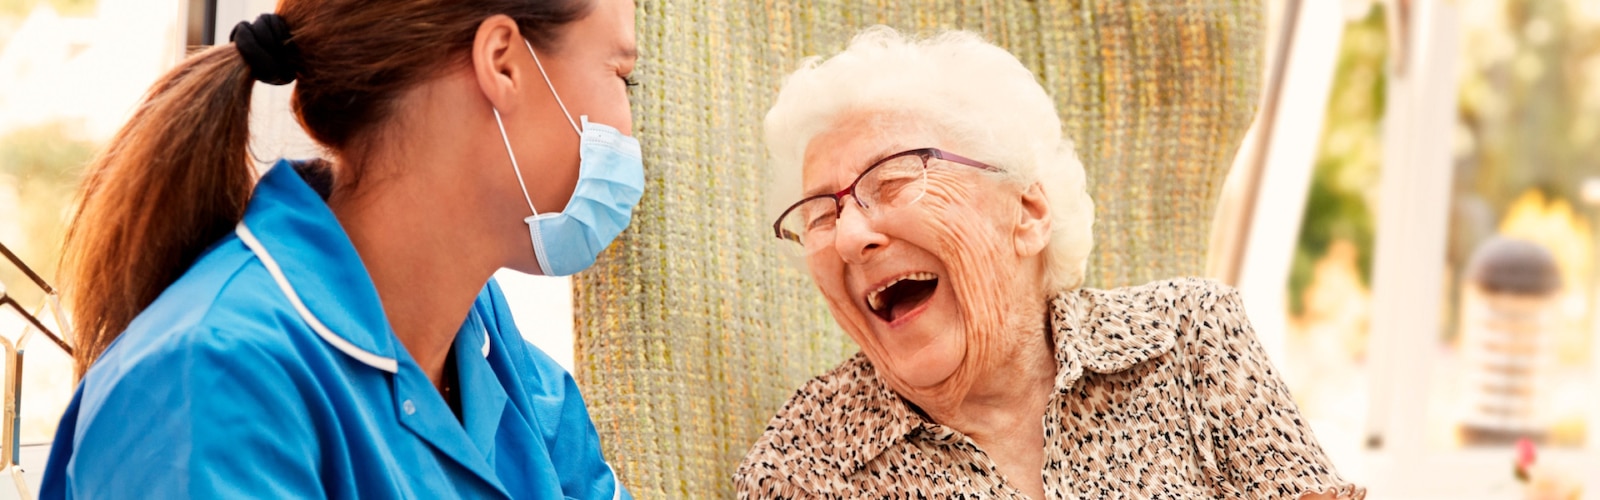 Μια νοσηλεύτρια και μια ηλικιωμένη γυναίκα γελάνε